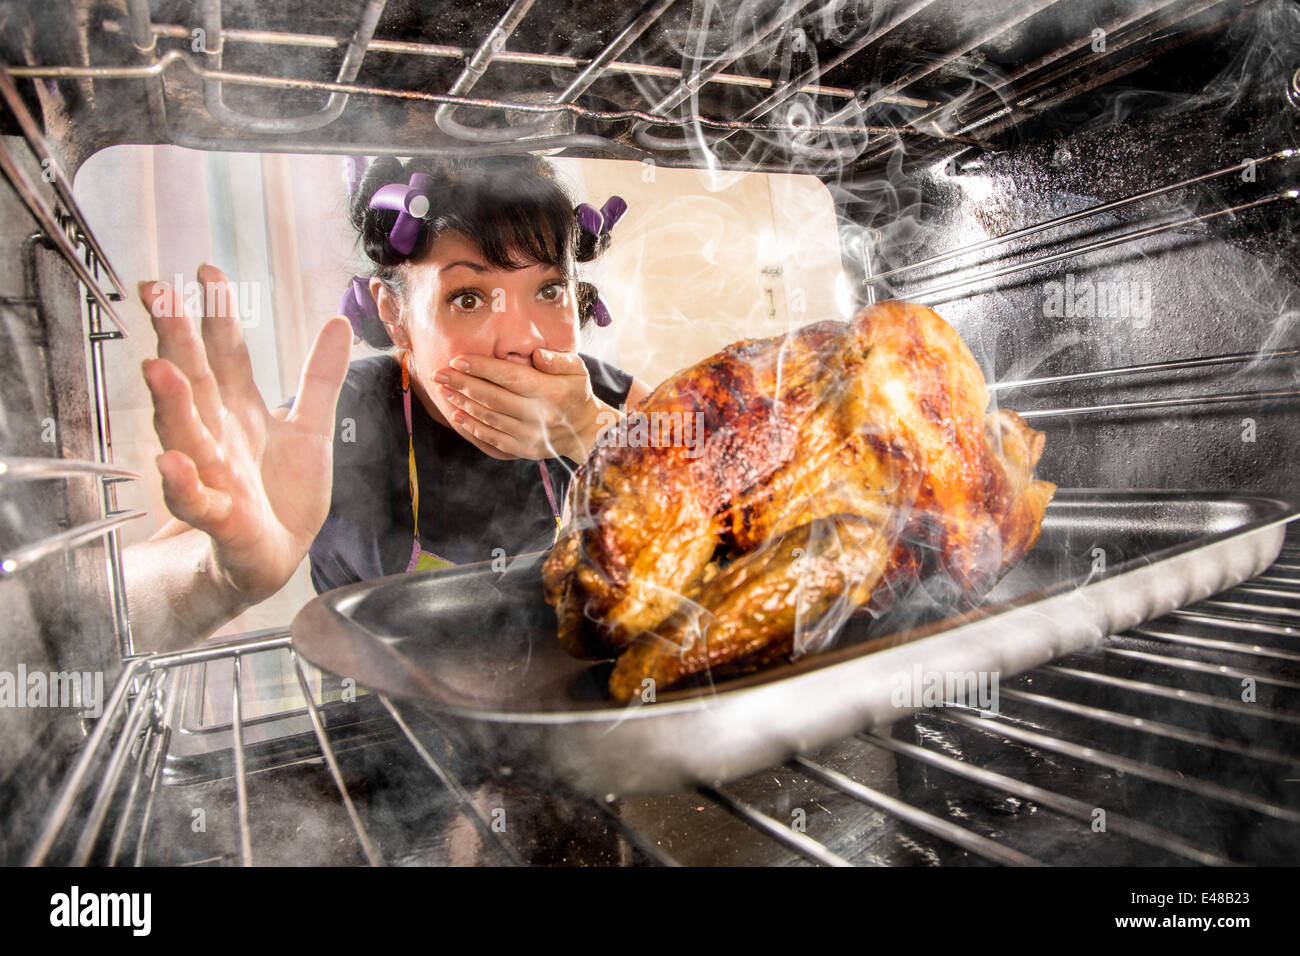 Ama de casa prepara pollo asado en el horno, vista desde el interior de la estufa. La cocción en el horno. Foto de stock